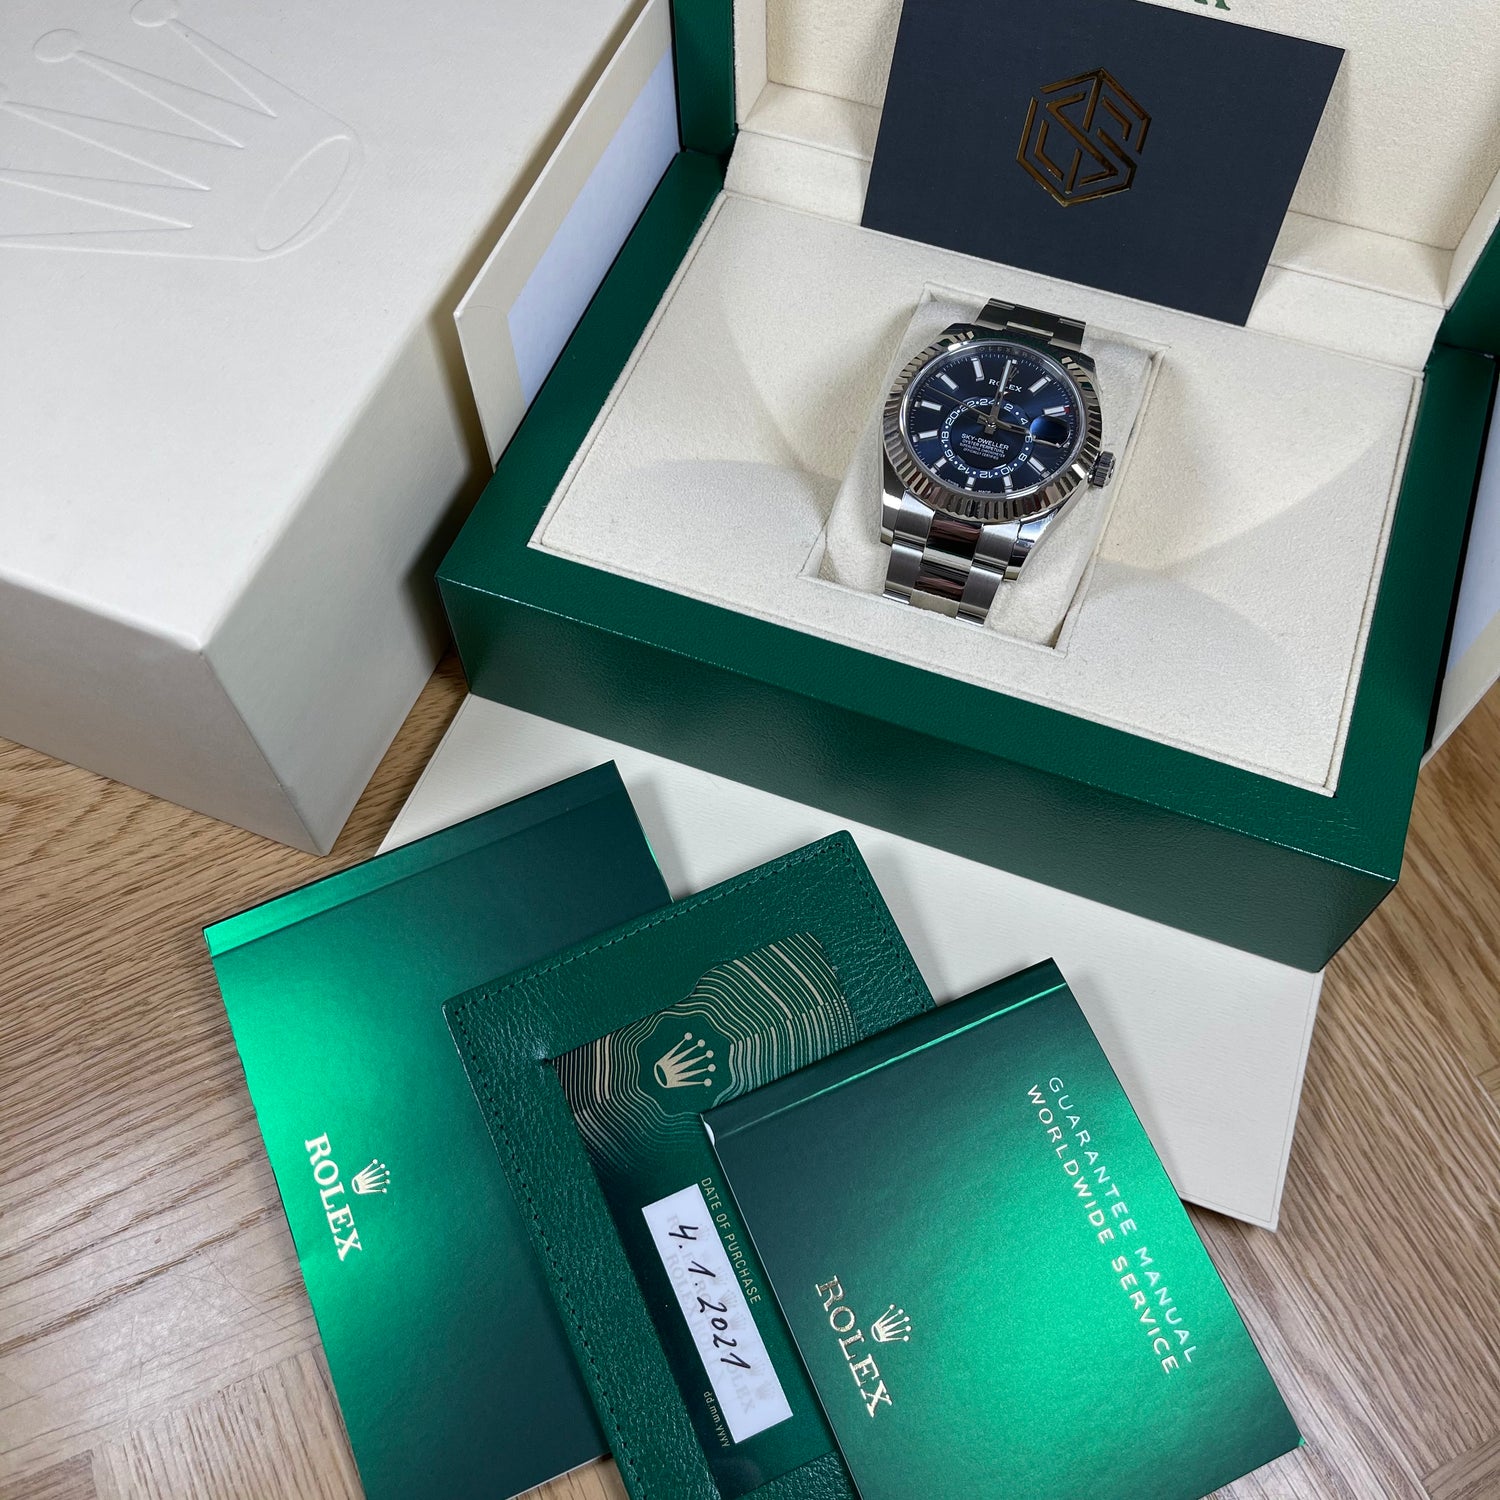 Rolex Sky Dweller Blue Dial 326934 Brand New 2021 Watch